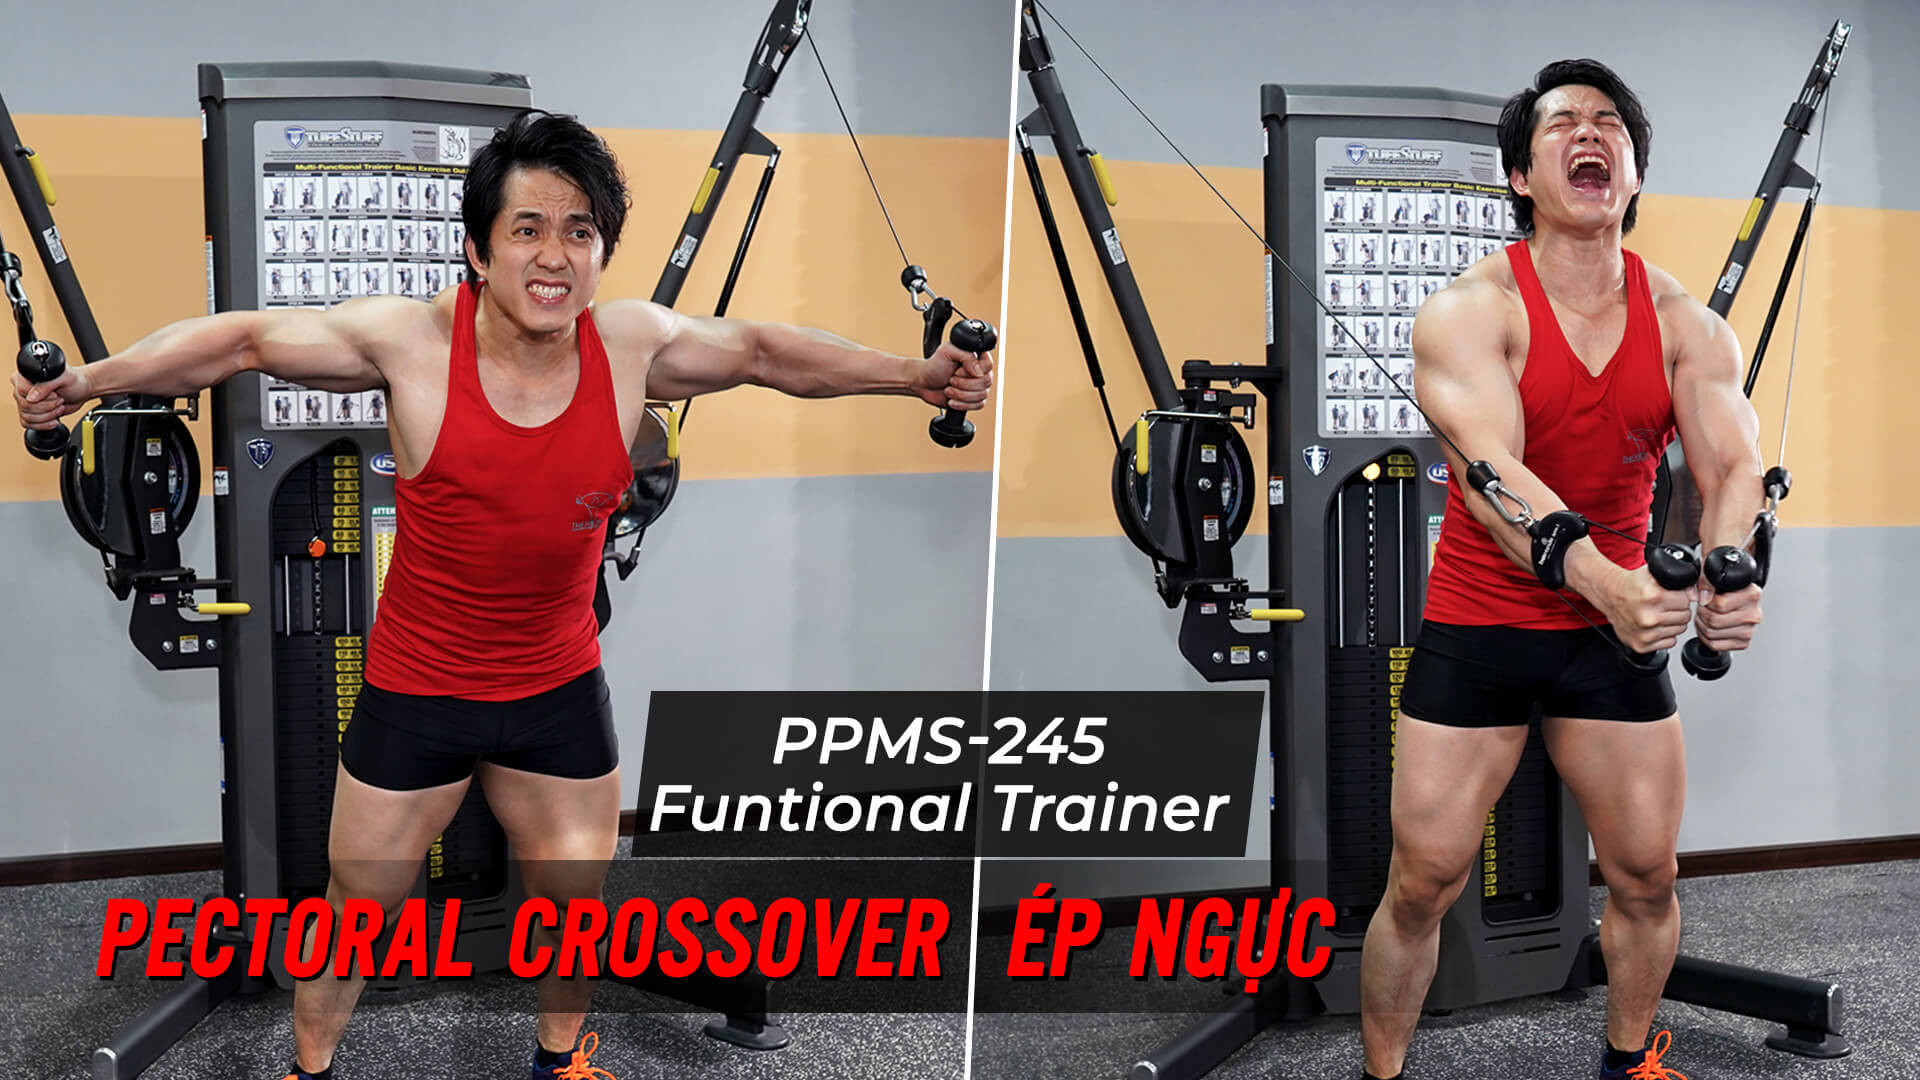 Pectoral Crossover - Ép ngực ngang với dây cáp trên Functional Trainer